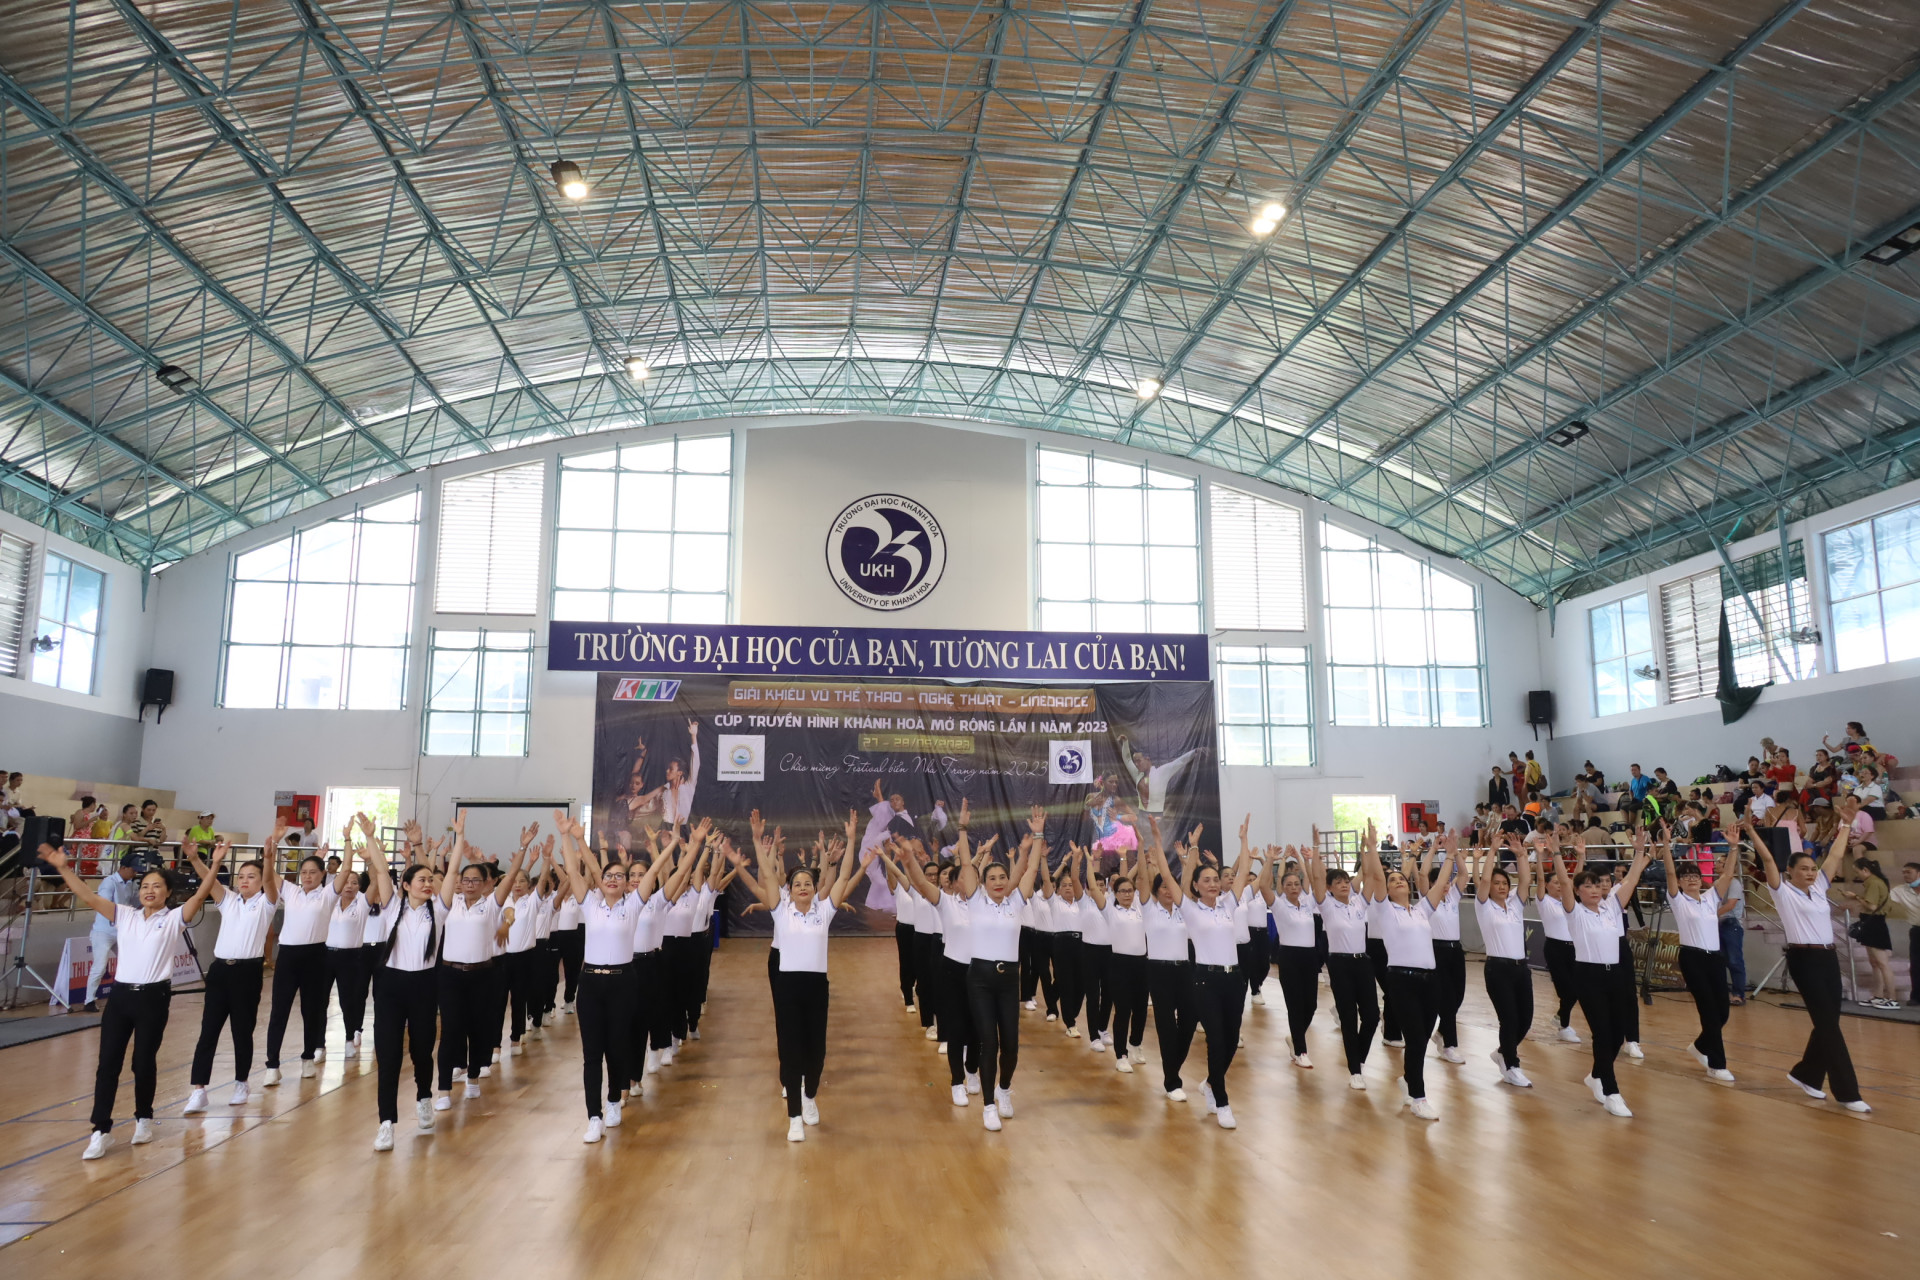 Màn đồng diễn “Phố biển Nha Trang” do nhóm vận động viên Liên đoàn khiêu vũ thể thao tỉnh Khánh Hòa biểu diễn.